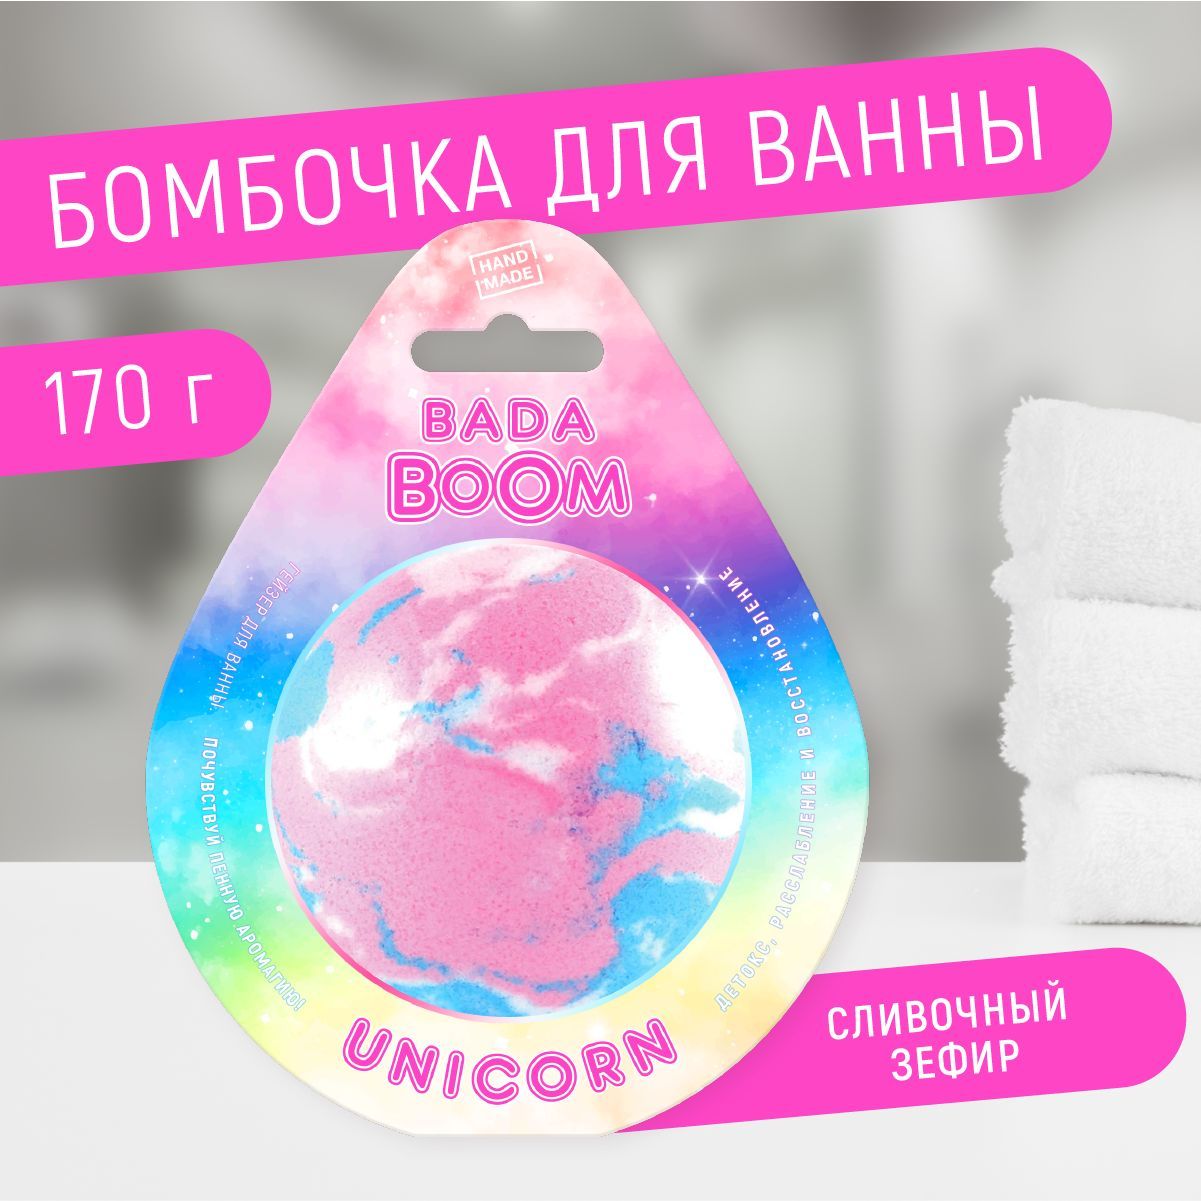 Бомбочка для ванны эко гейзер Unicorn сливочный зефир 170 г